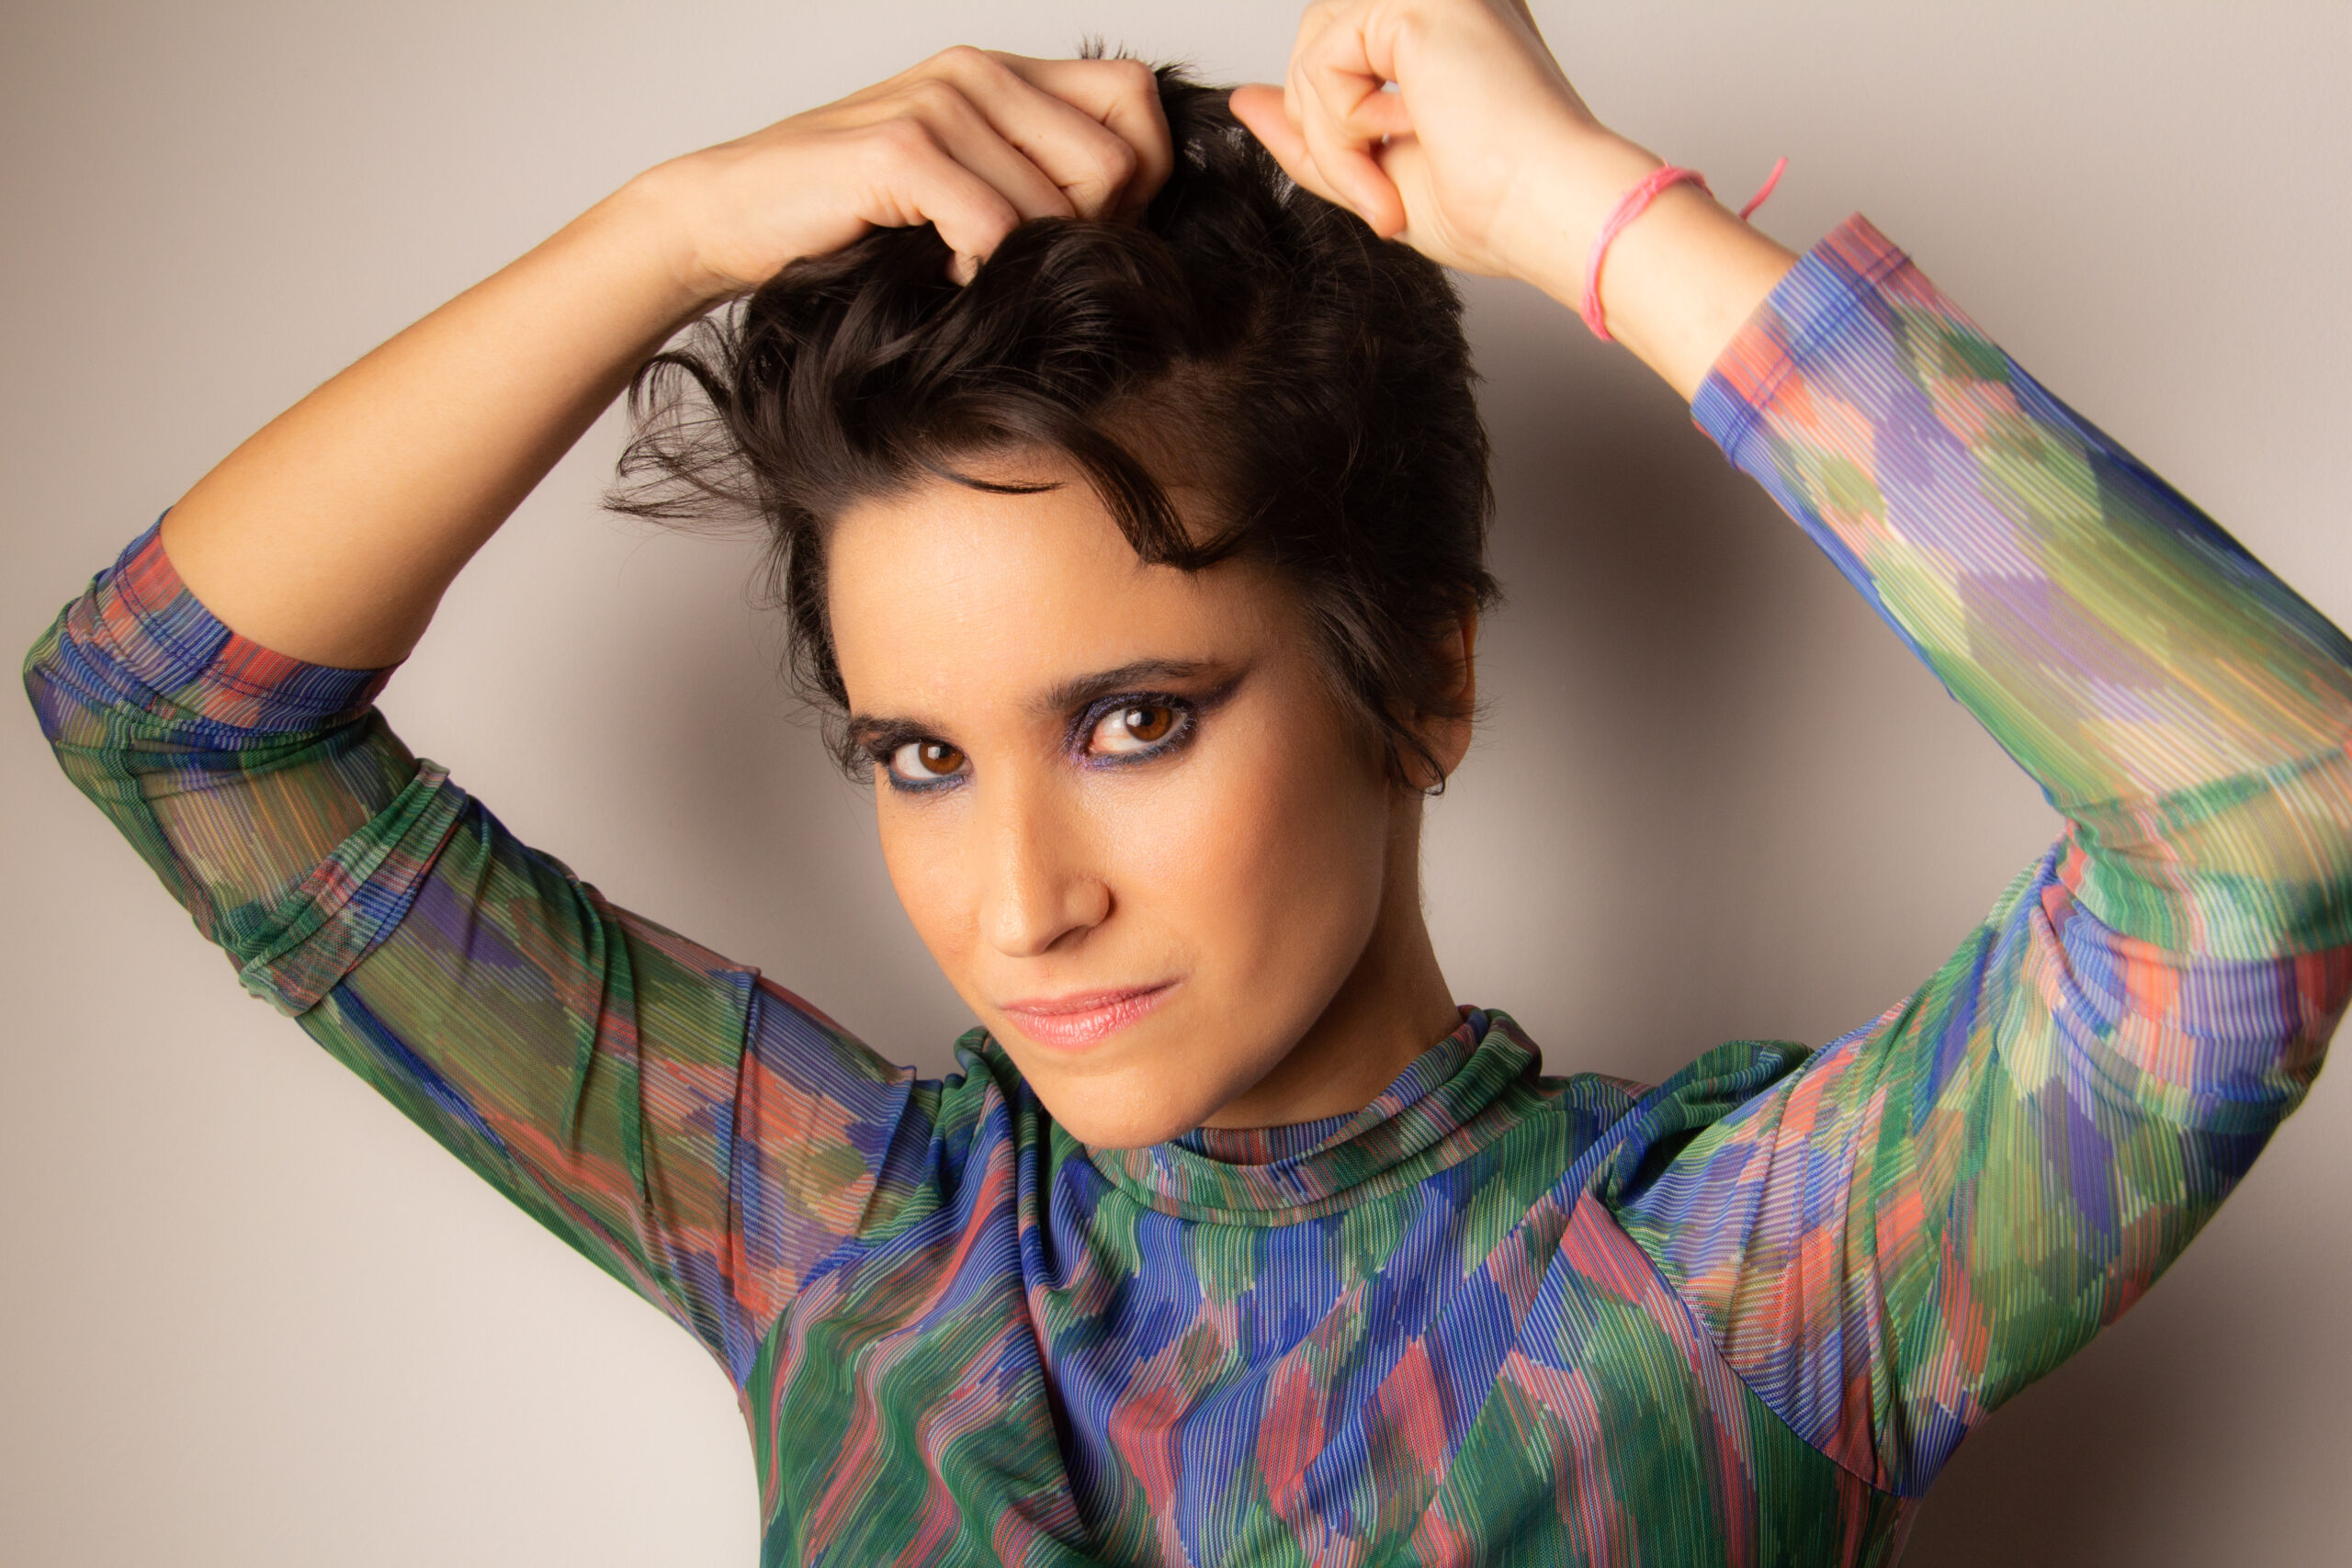 Com um olhar delicado e afetuoso, a talentosa cantora paulistana Marcela Brandão lança nesta semana seu mais recente EP intitulado “Petricor”